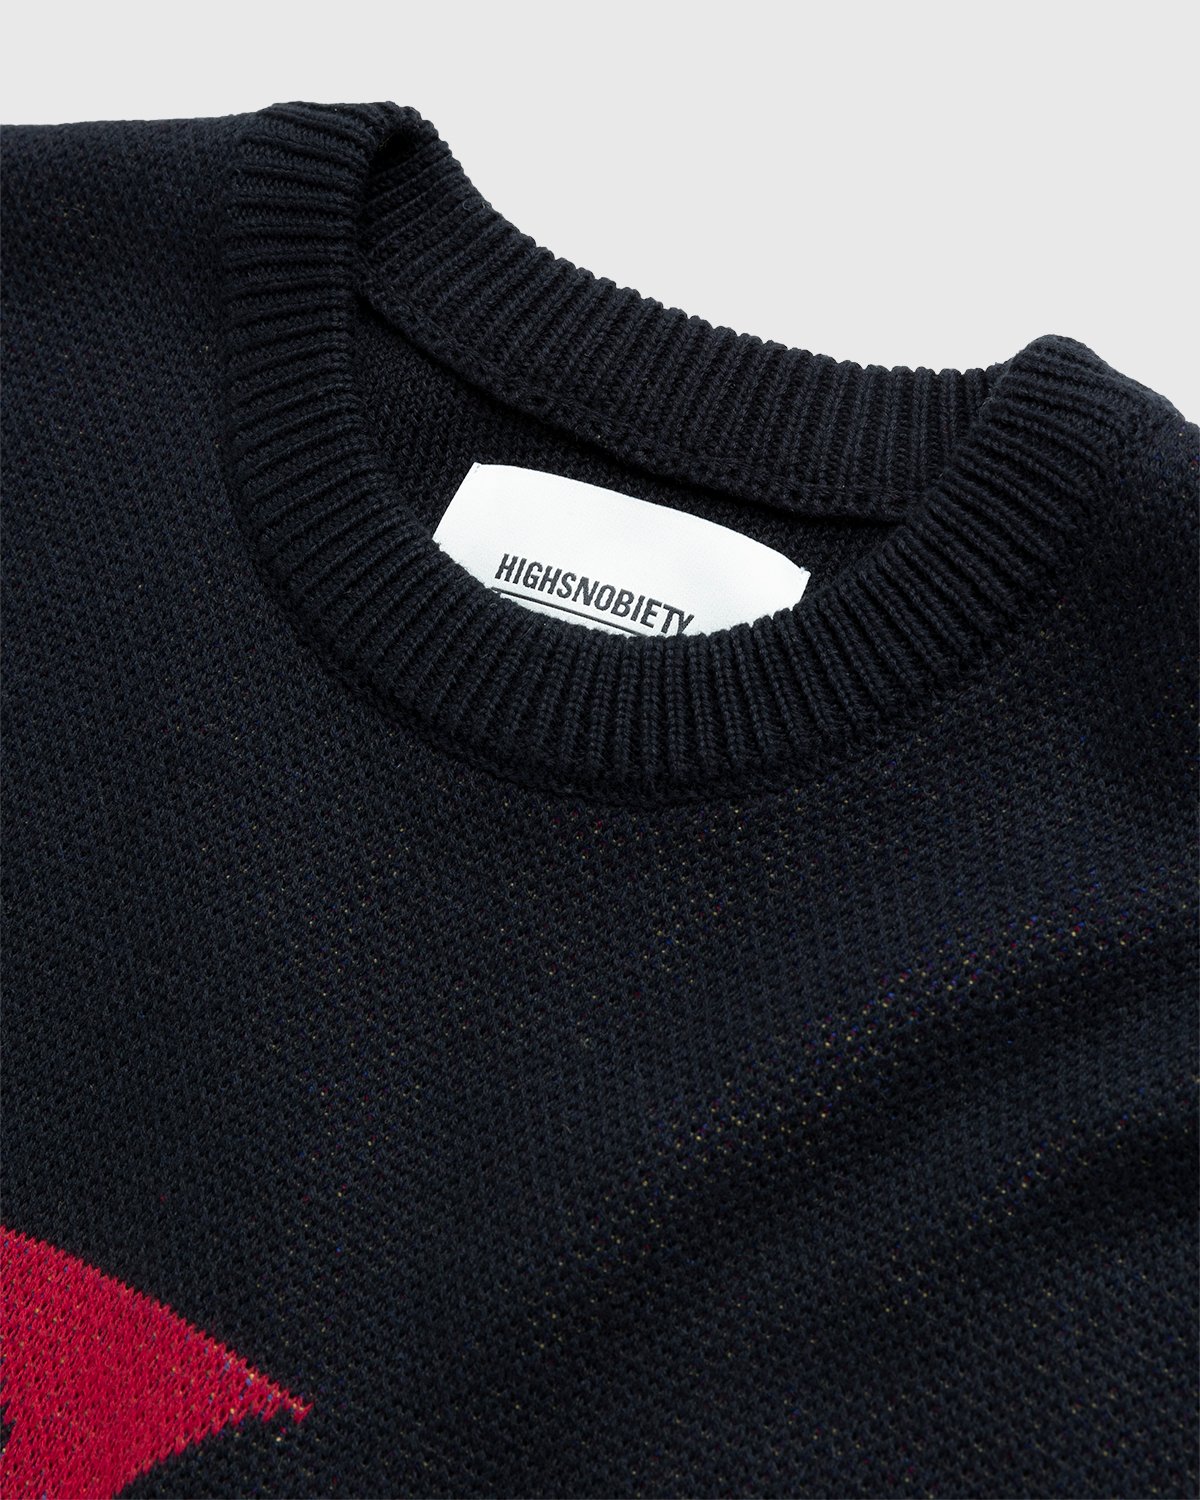 Jacob & Co. x Highsnobiety - Logo Knit Sweater Black - Clothing - Black - Image 4